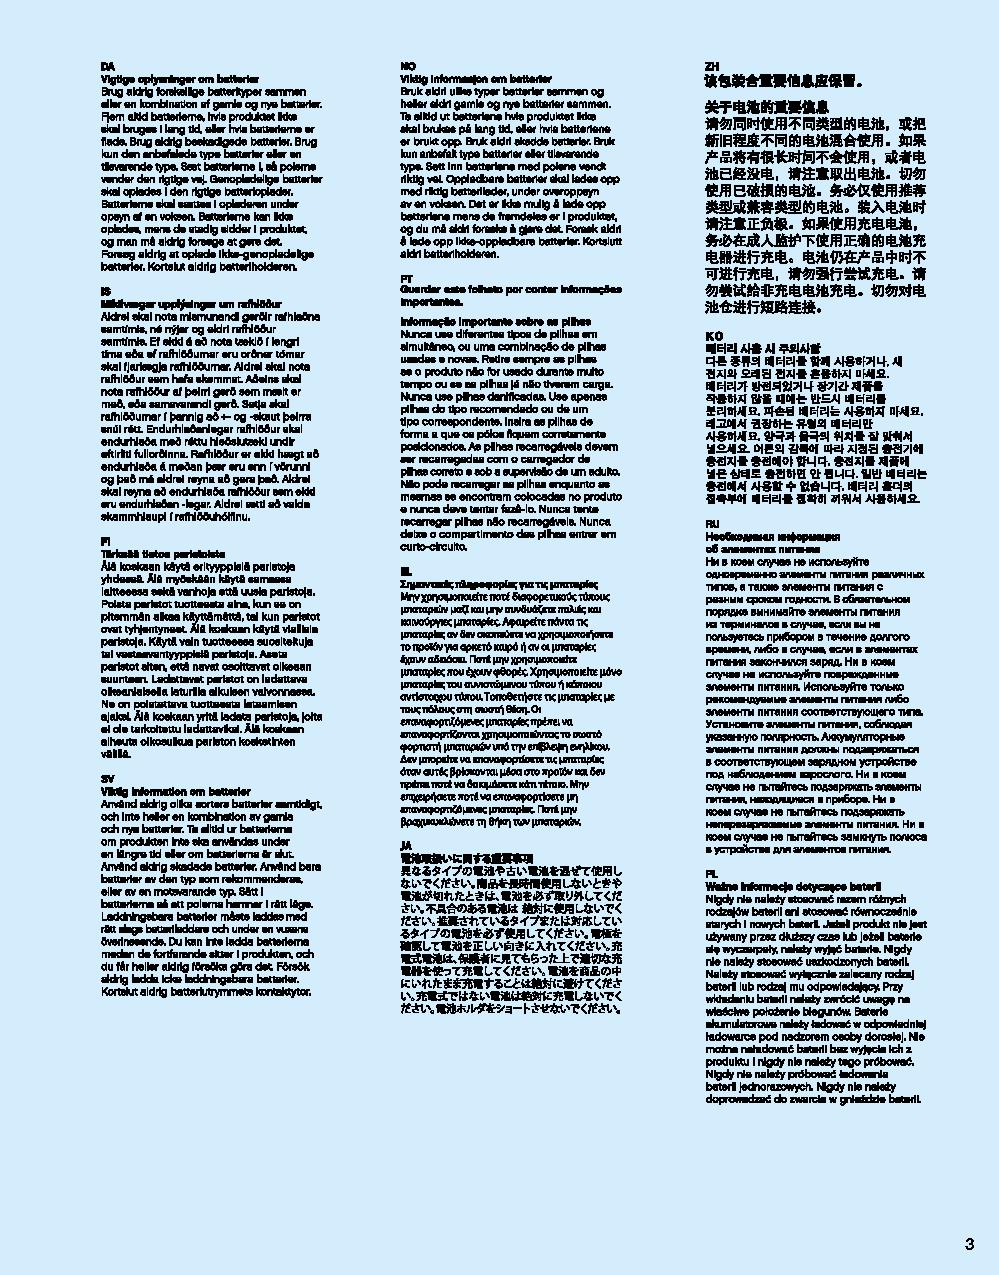 ハルクバスター：ウルトロン・エディション 76105 レゴの商品情報 レゴの説明書・組立方法 3 page